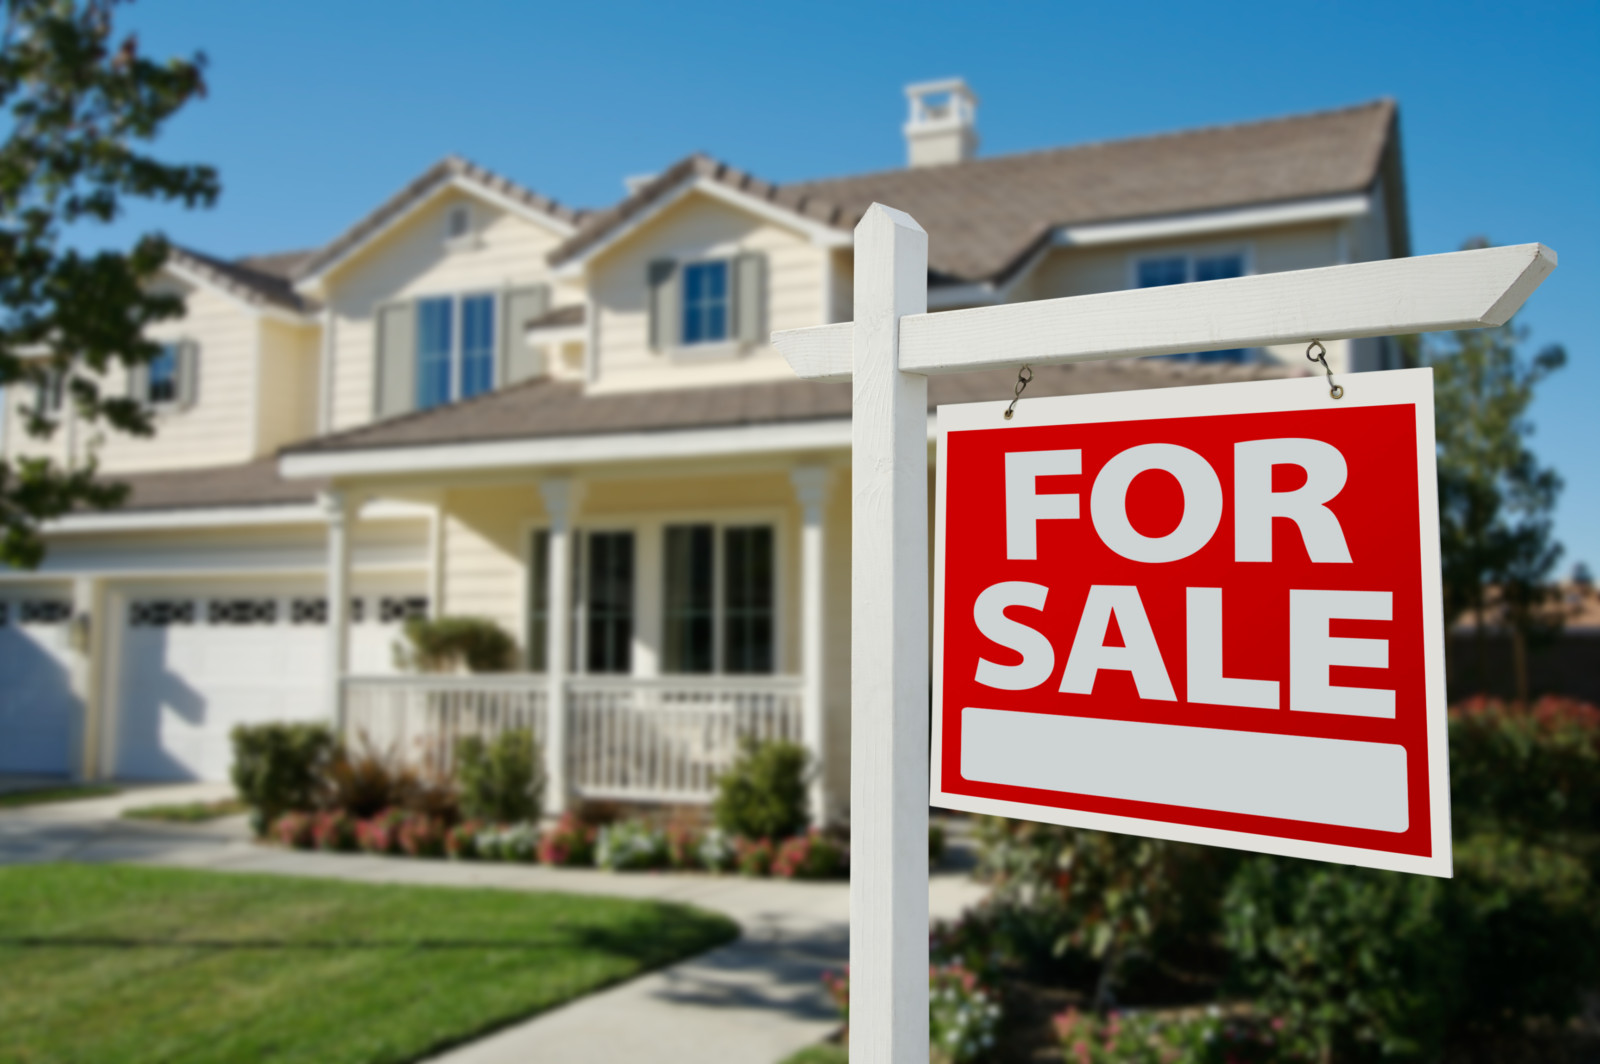 Μειώθηκαν 3,4% οι πωλήσεις κατοικιών στις ΗΠΑ τον Μάιο 